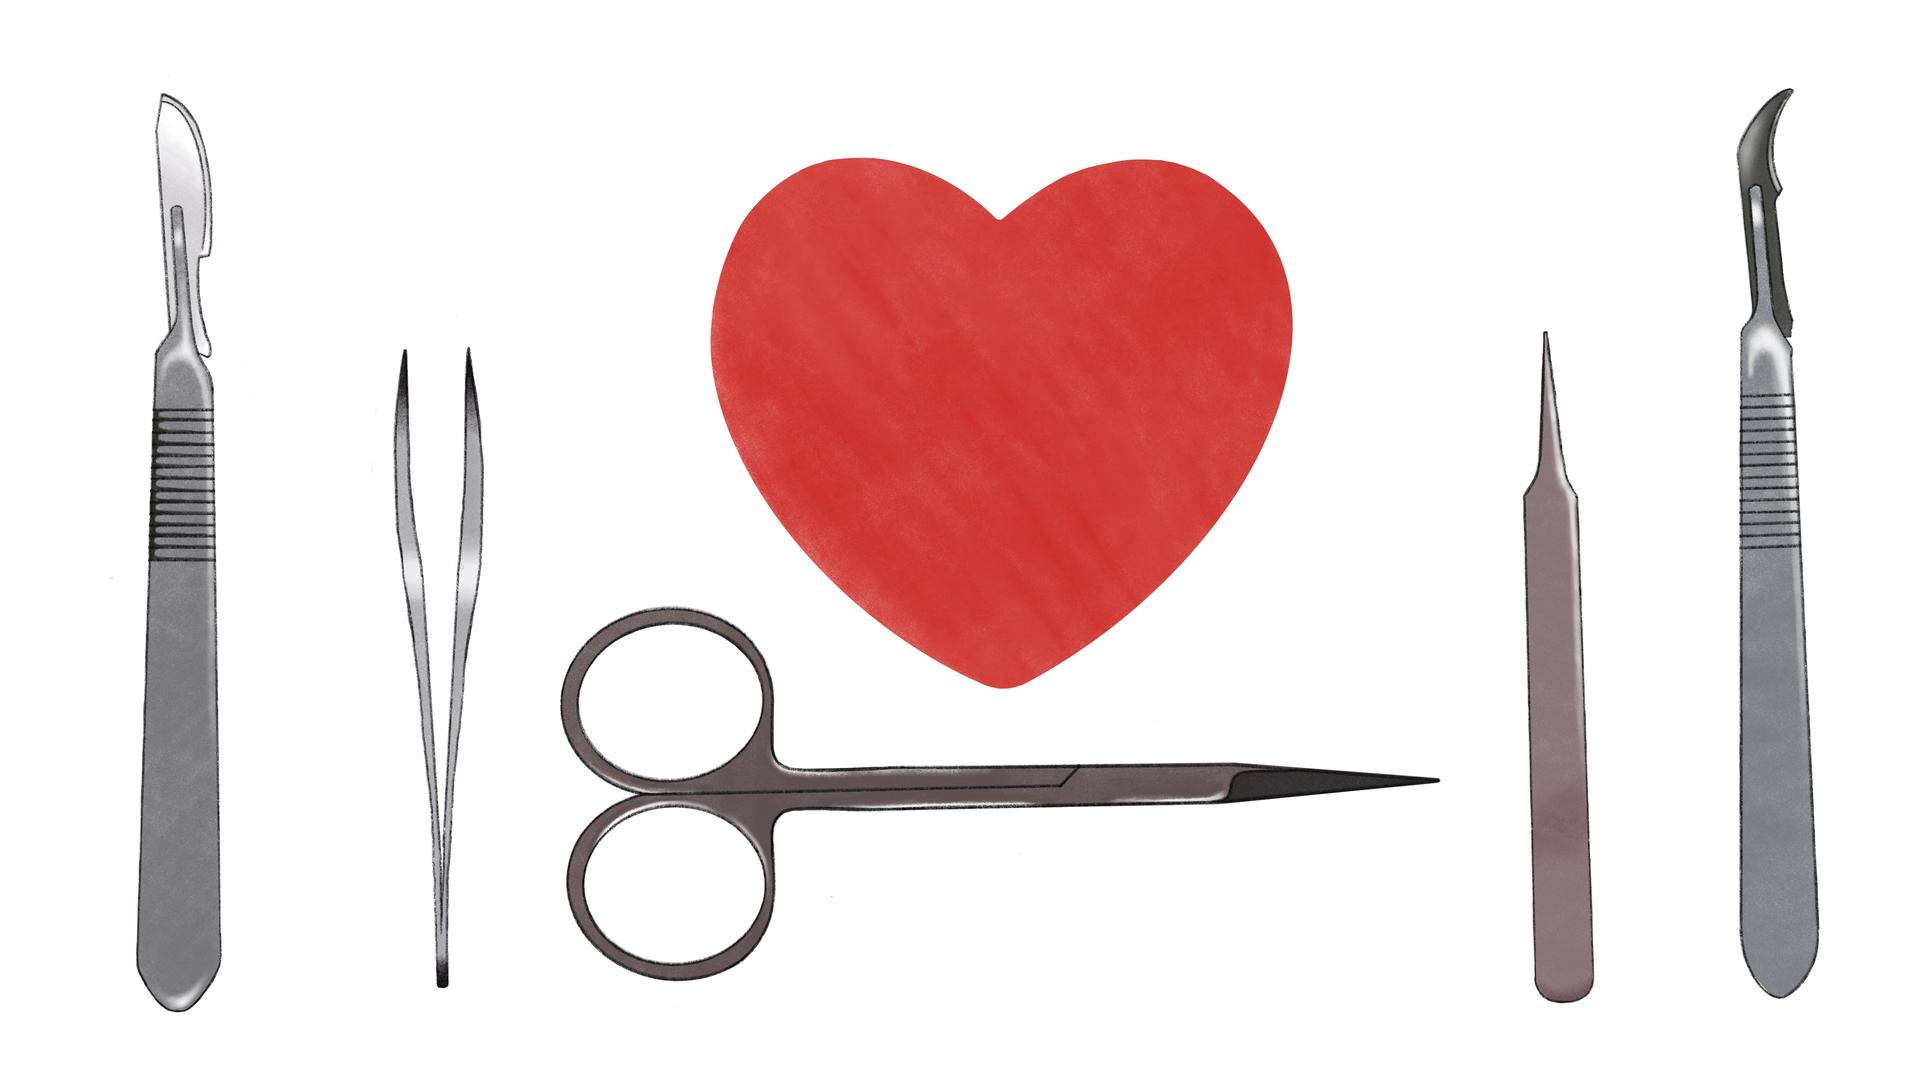 Die Illustration zeigt ein Herz in der Mitte und typische medizinische Geräte die bei Operationen eingesetzt werden.